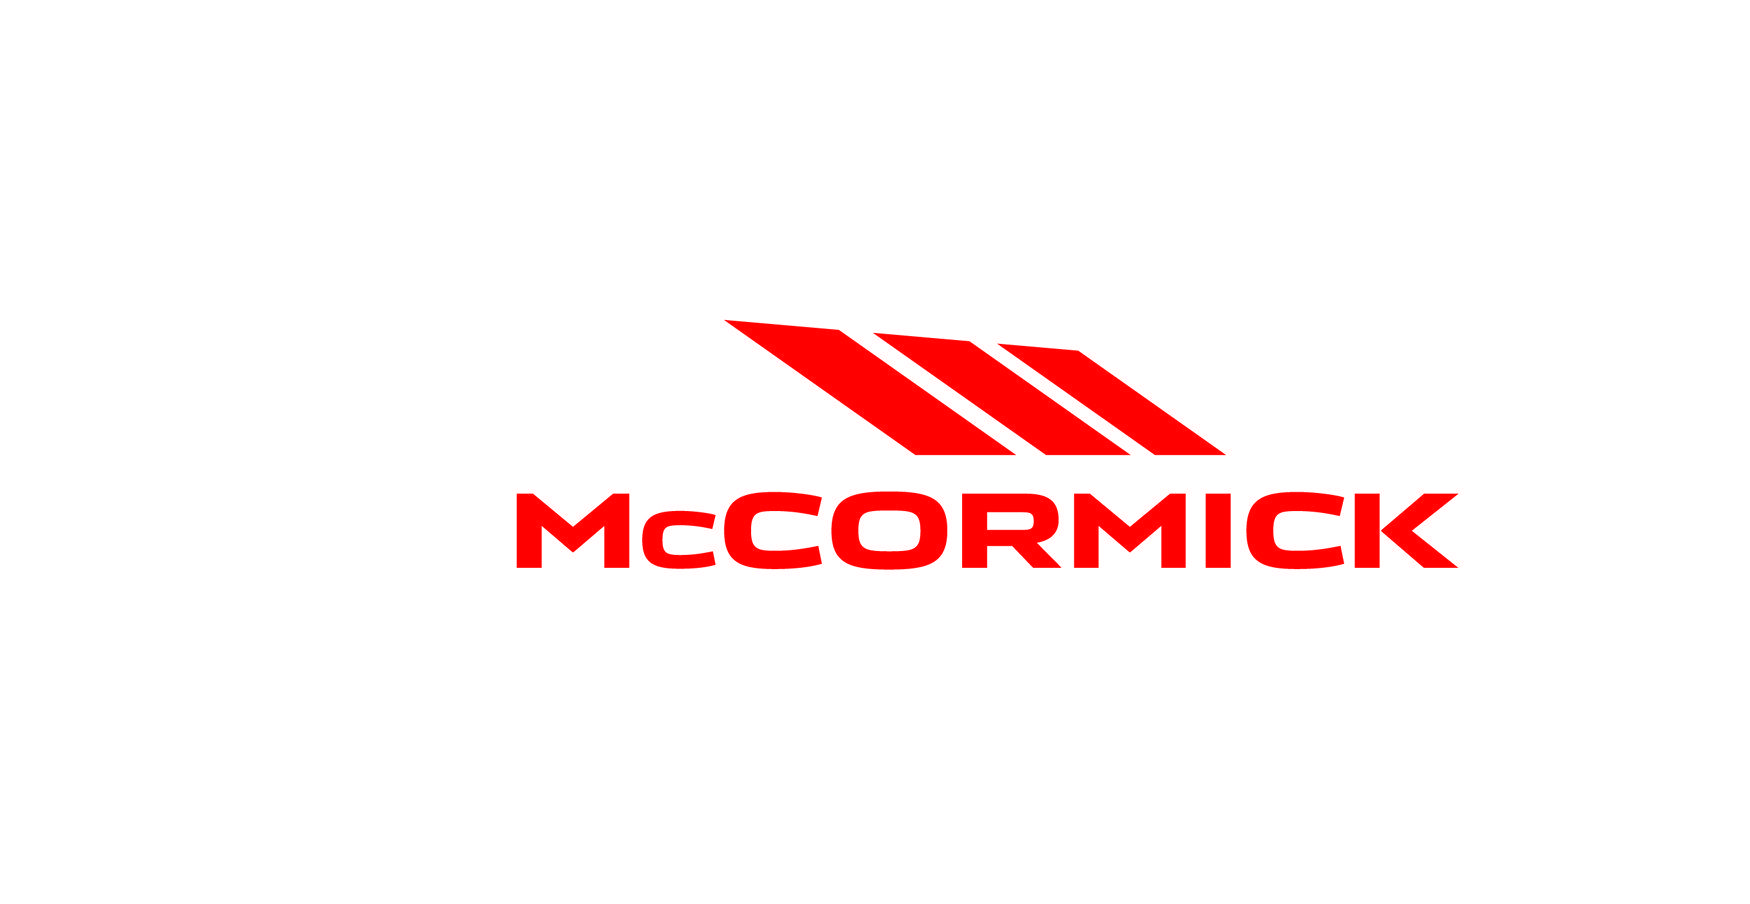 McCormick Logo - McCormick renueva su logo - Agricultura